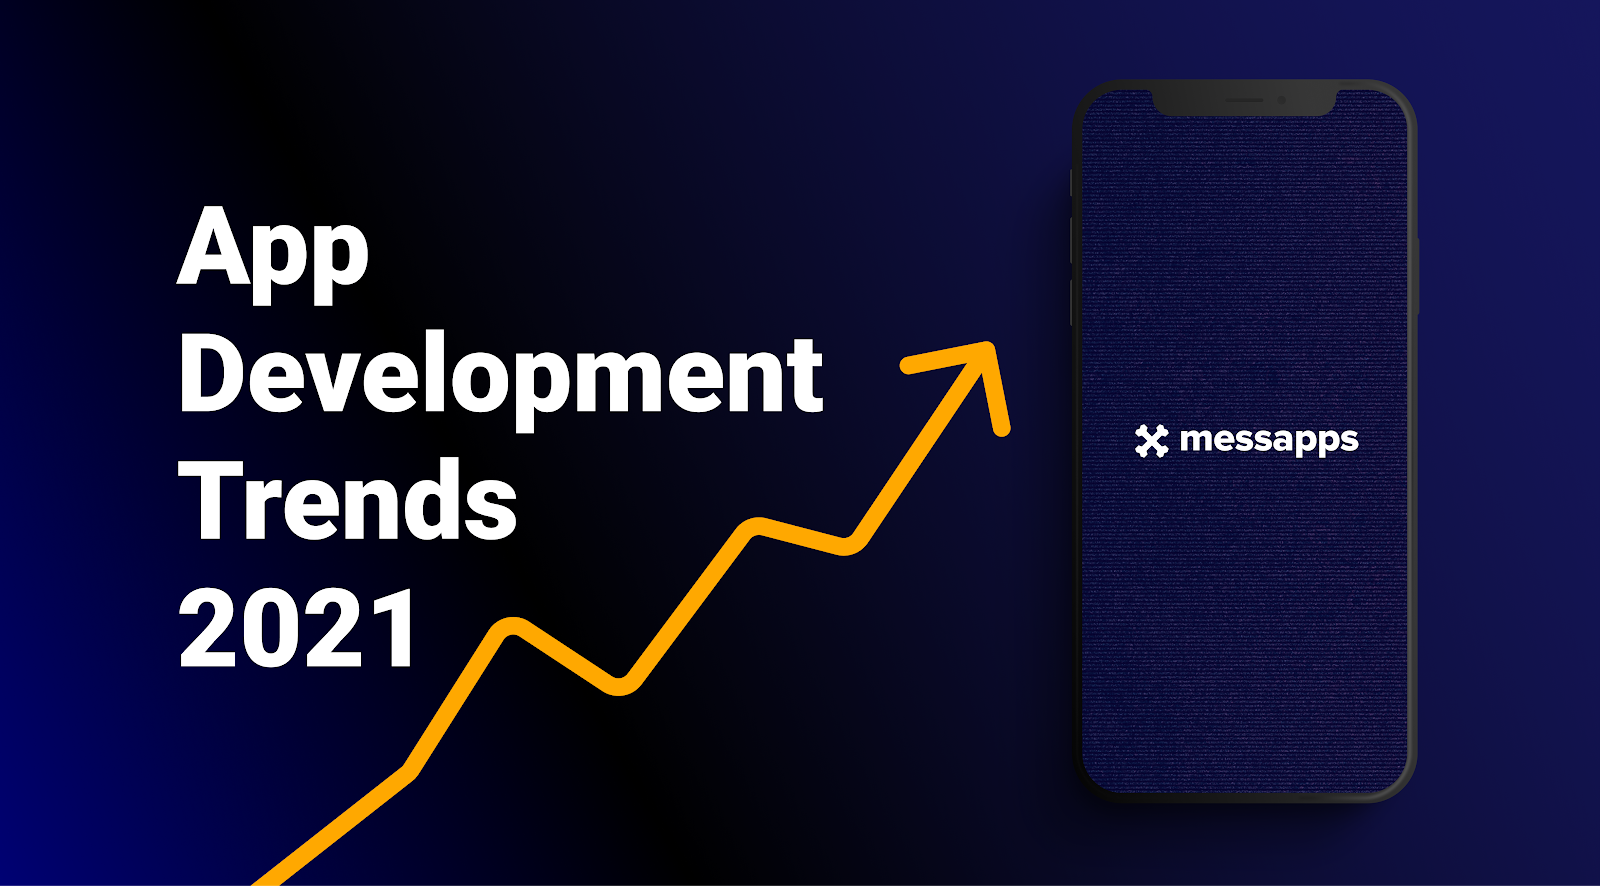 App Development Trends in 2021